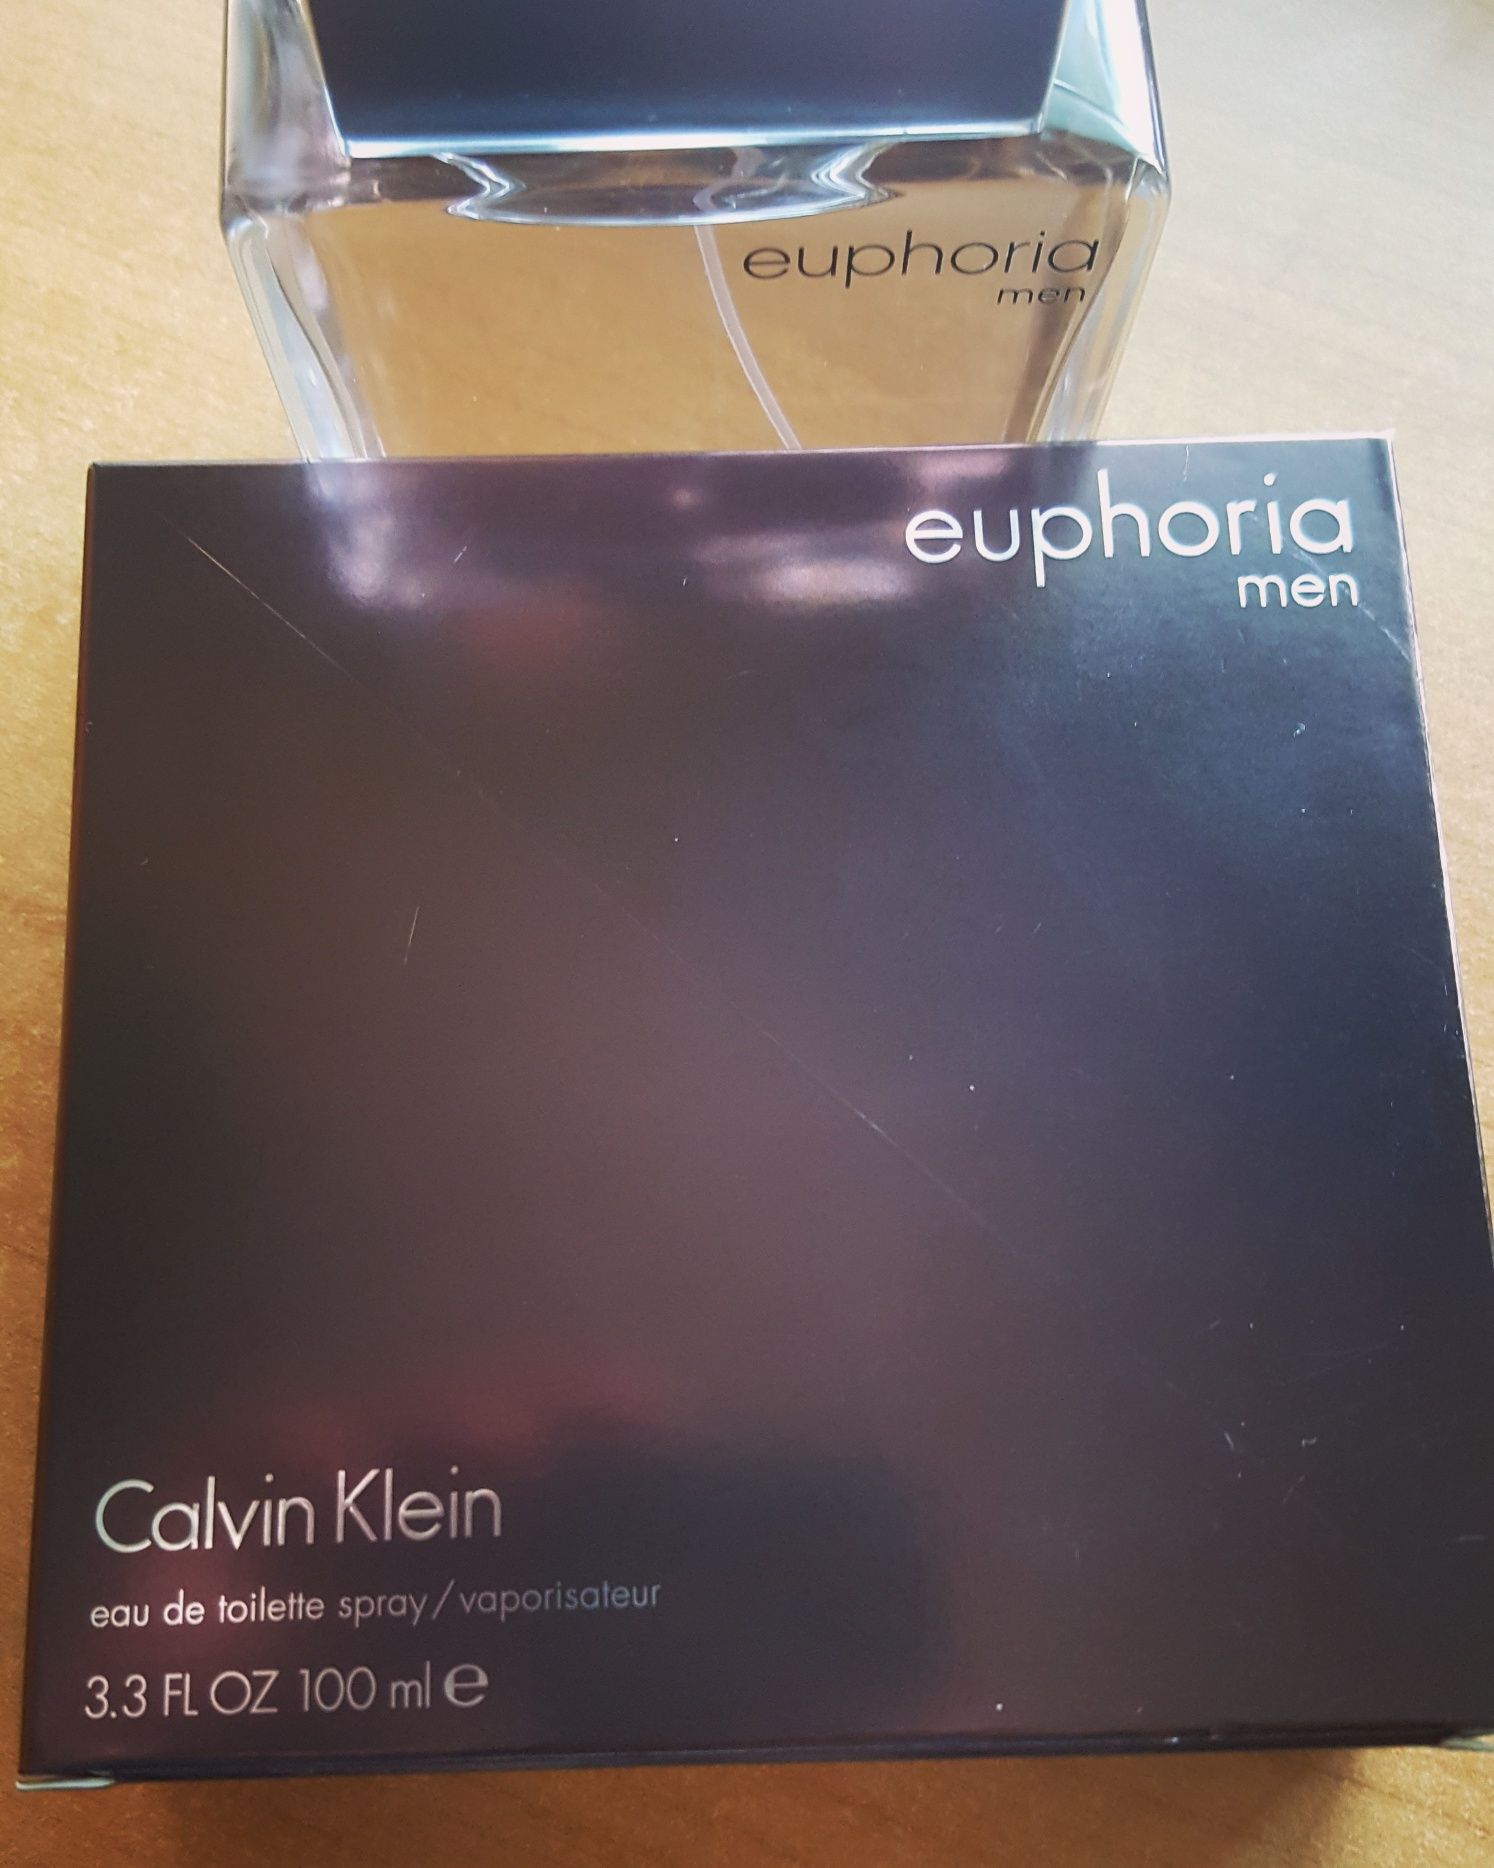 Calvin Klein - Euphoria Men